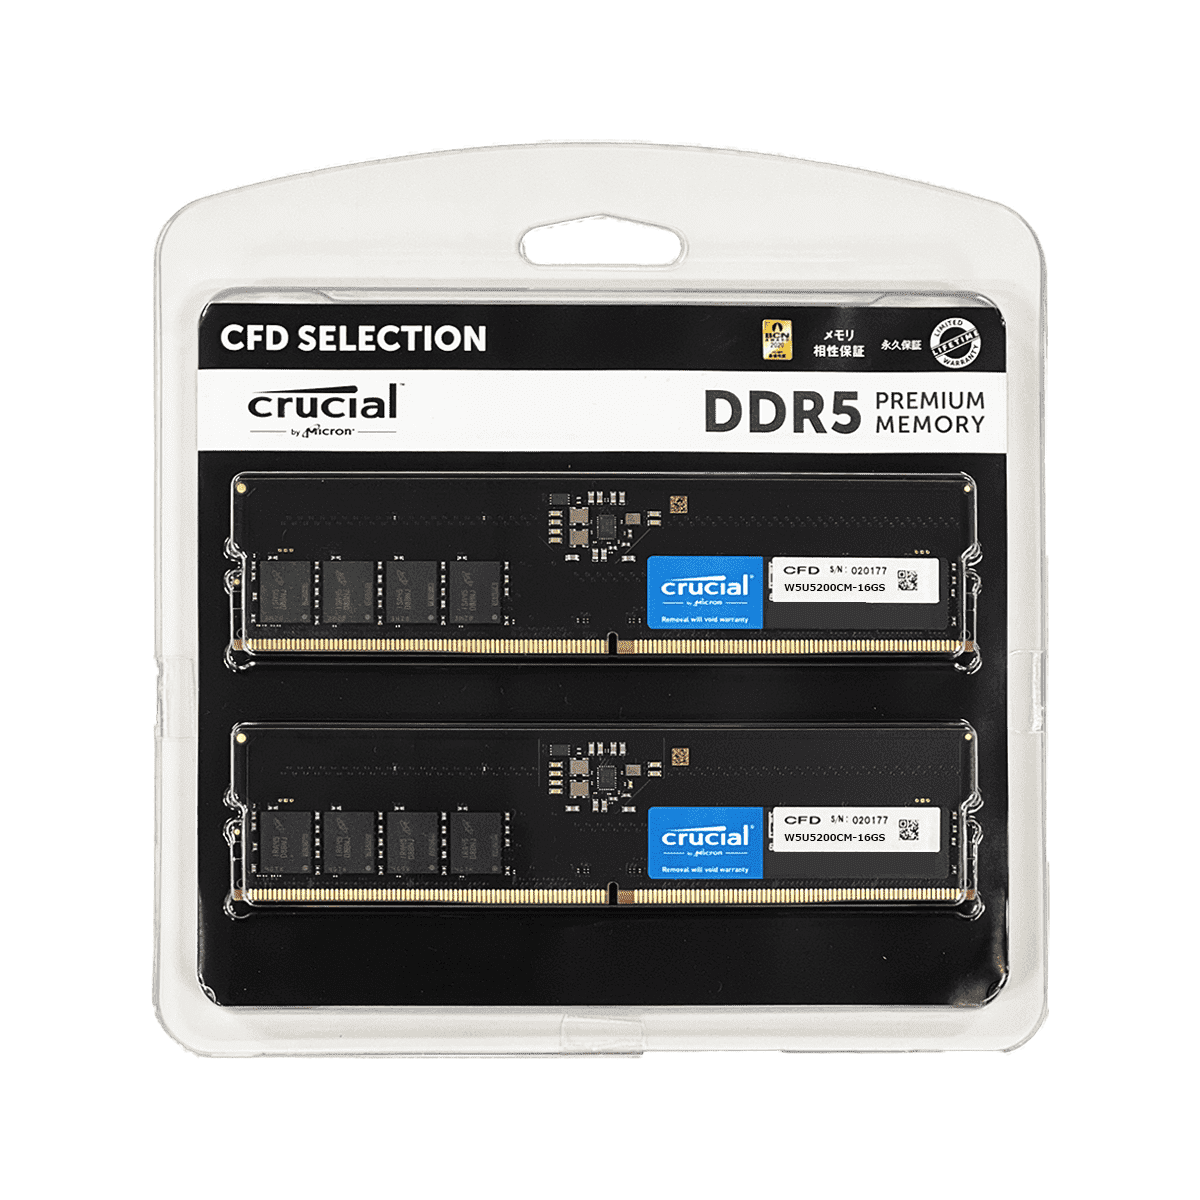 CFD Selection DDR5-5200 デスクトップ用メモリ 2枚組 16GB W5U5200CM-16GS